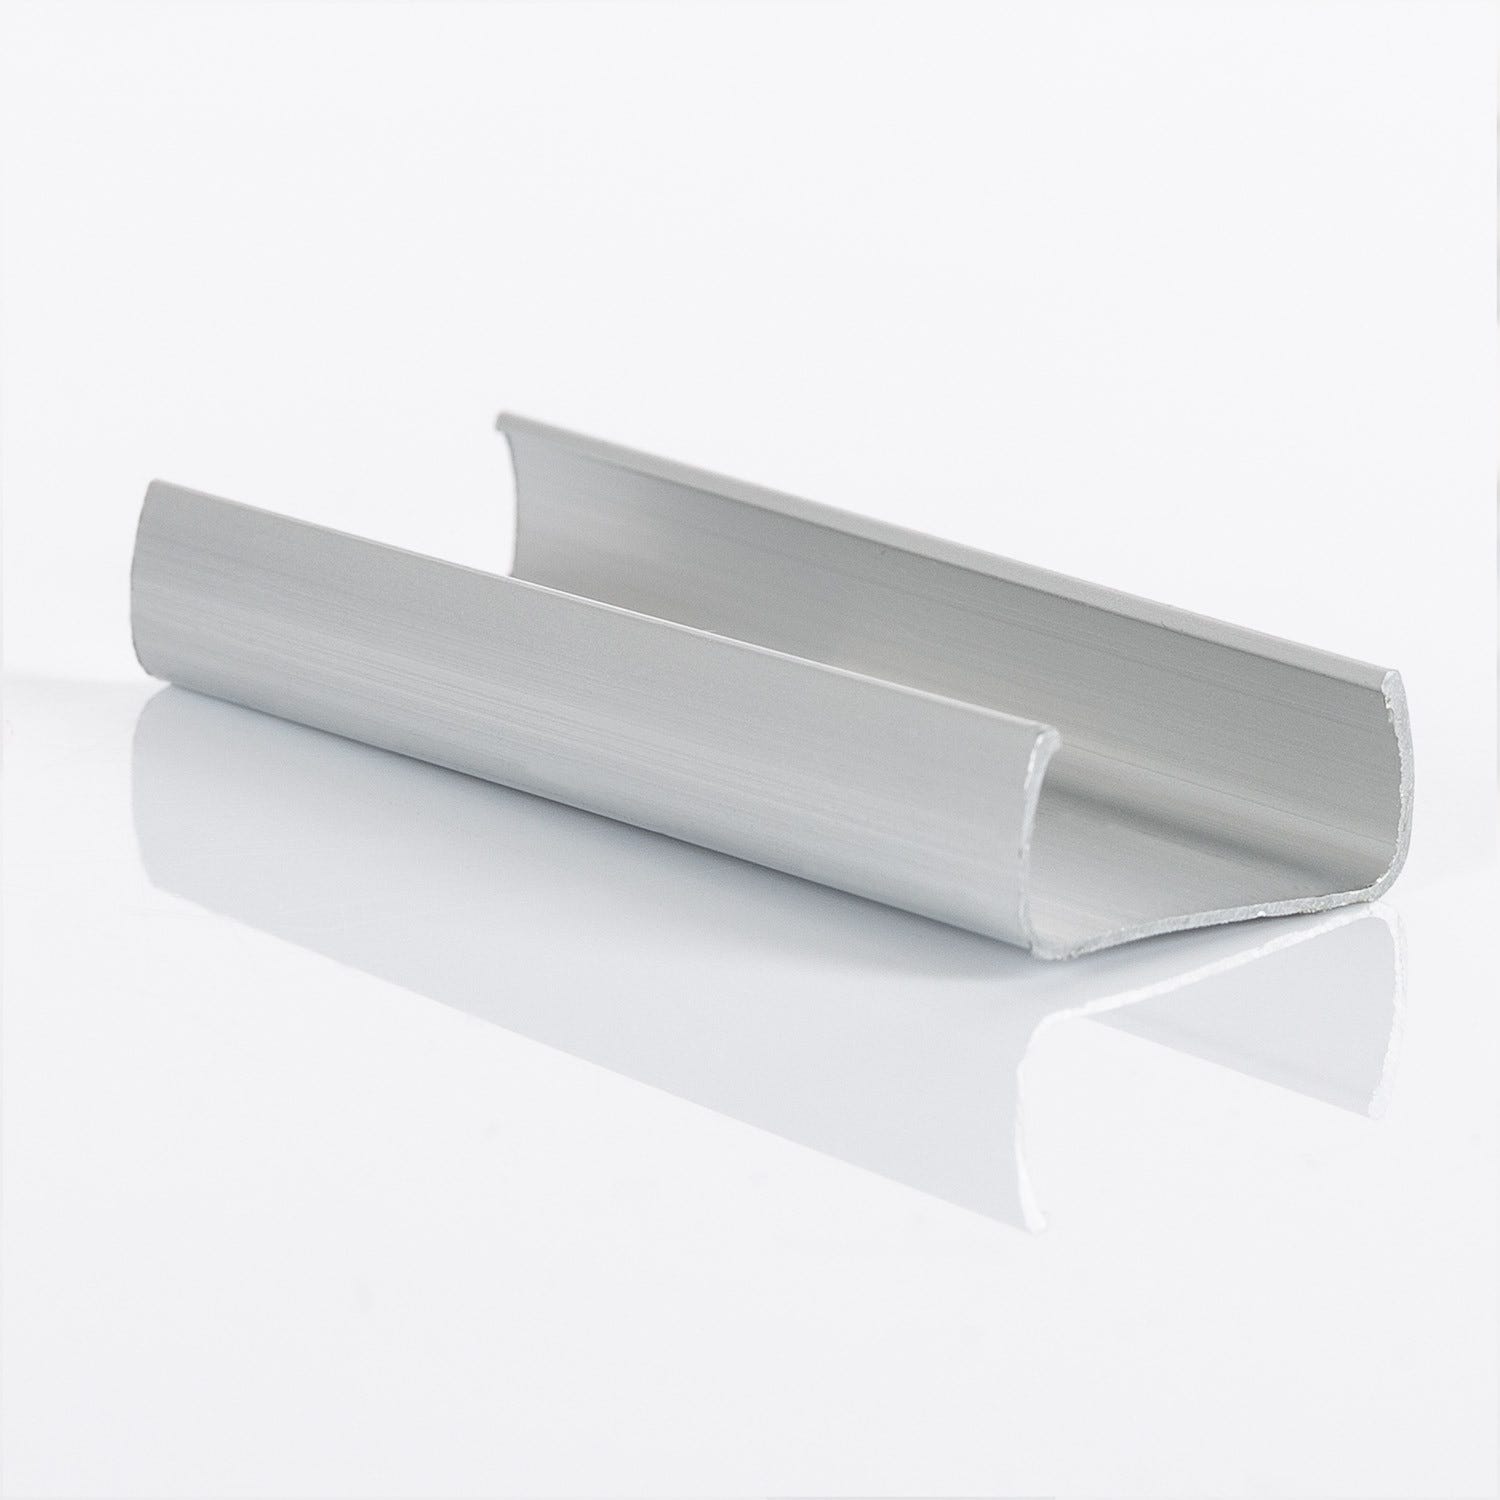 Clip de Fixation Aluminium pour Gaine Néons LED Flexible Dimmable